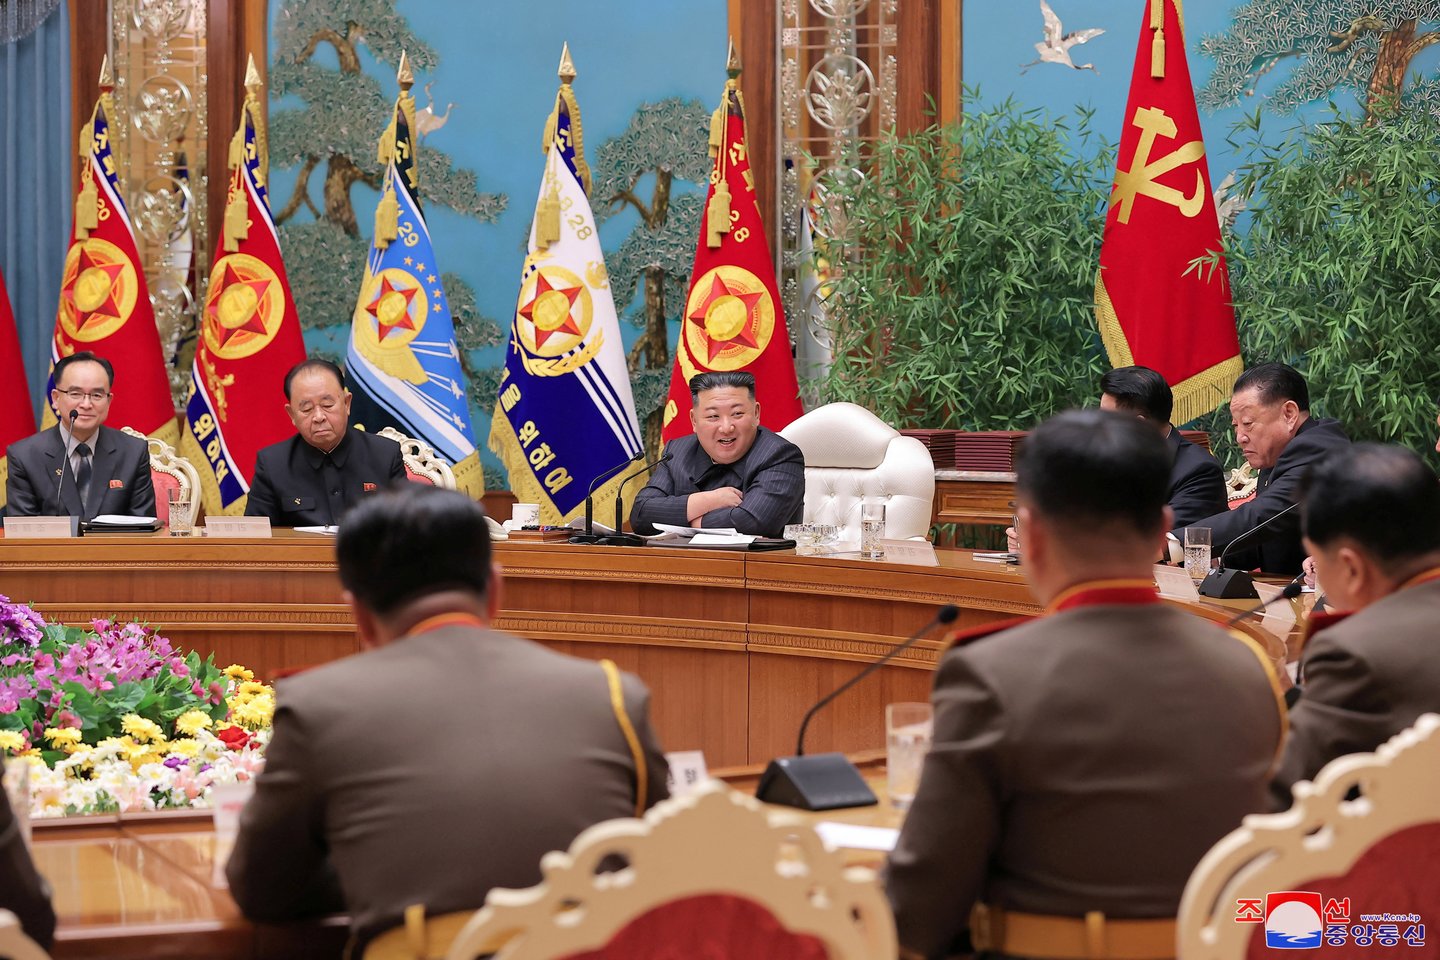 Šiaurės Korėjos lyderis Kim Jong Unas pirmininkauja kariniam susitikimui.<br>Reuters/Scanpix nuotr.